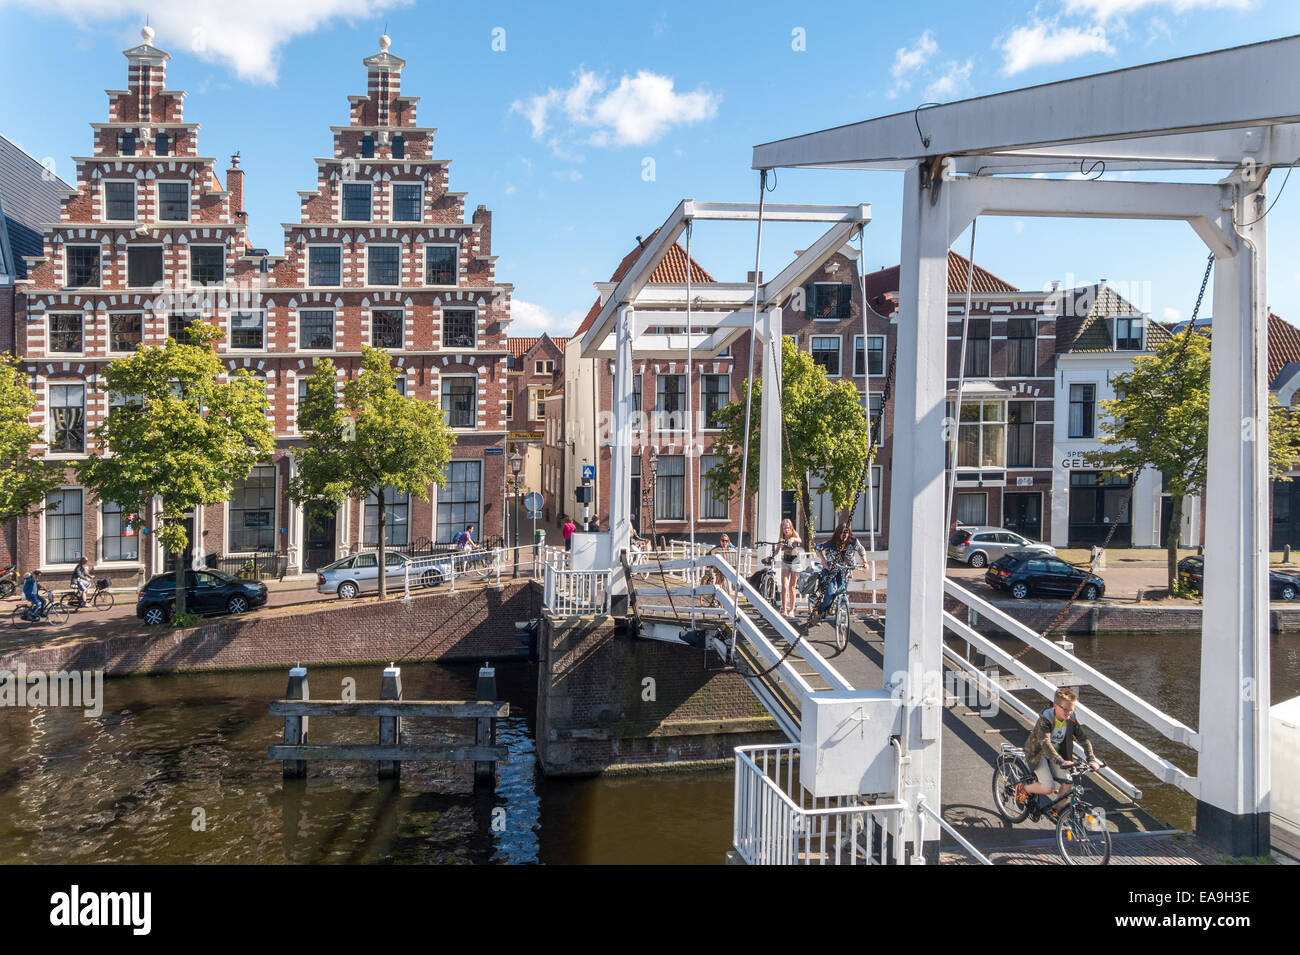 Pont-levis en bois Haarlem pour vélos motos cycles. Gravestenen avec pont de l'ancienne brasserie Olyphant (1606). Canal de la rivière Spaarne. Banque D'Images